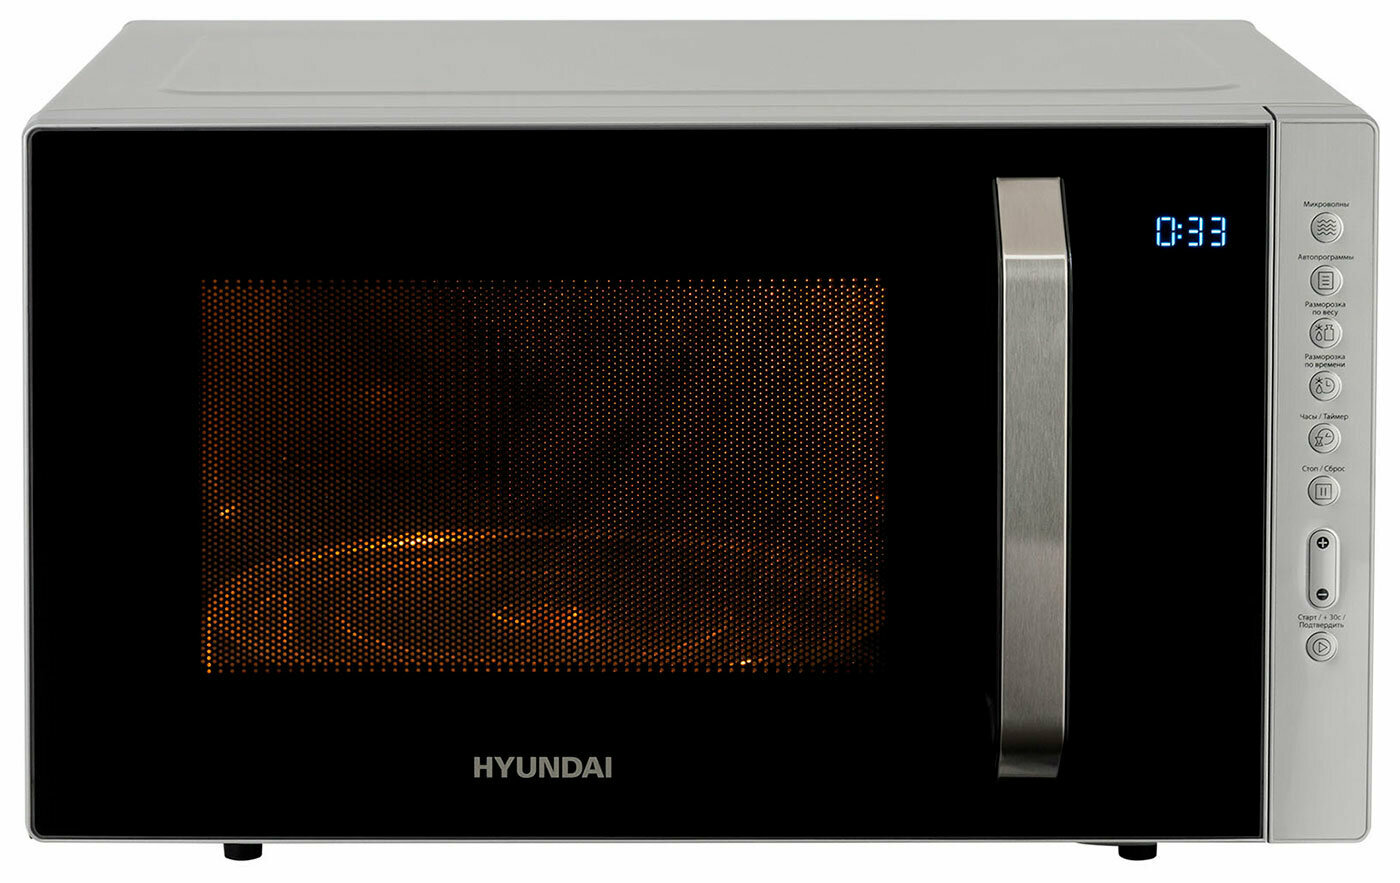 Микроволновая печь - СВЧ Hyundai HYM-M2066, 23 л, 800 Вт, серебристый